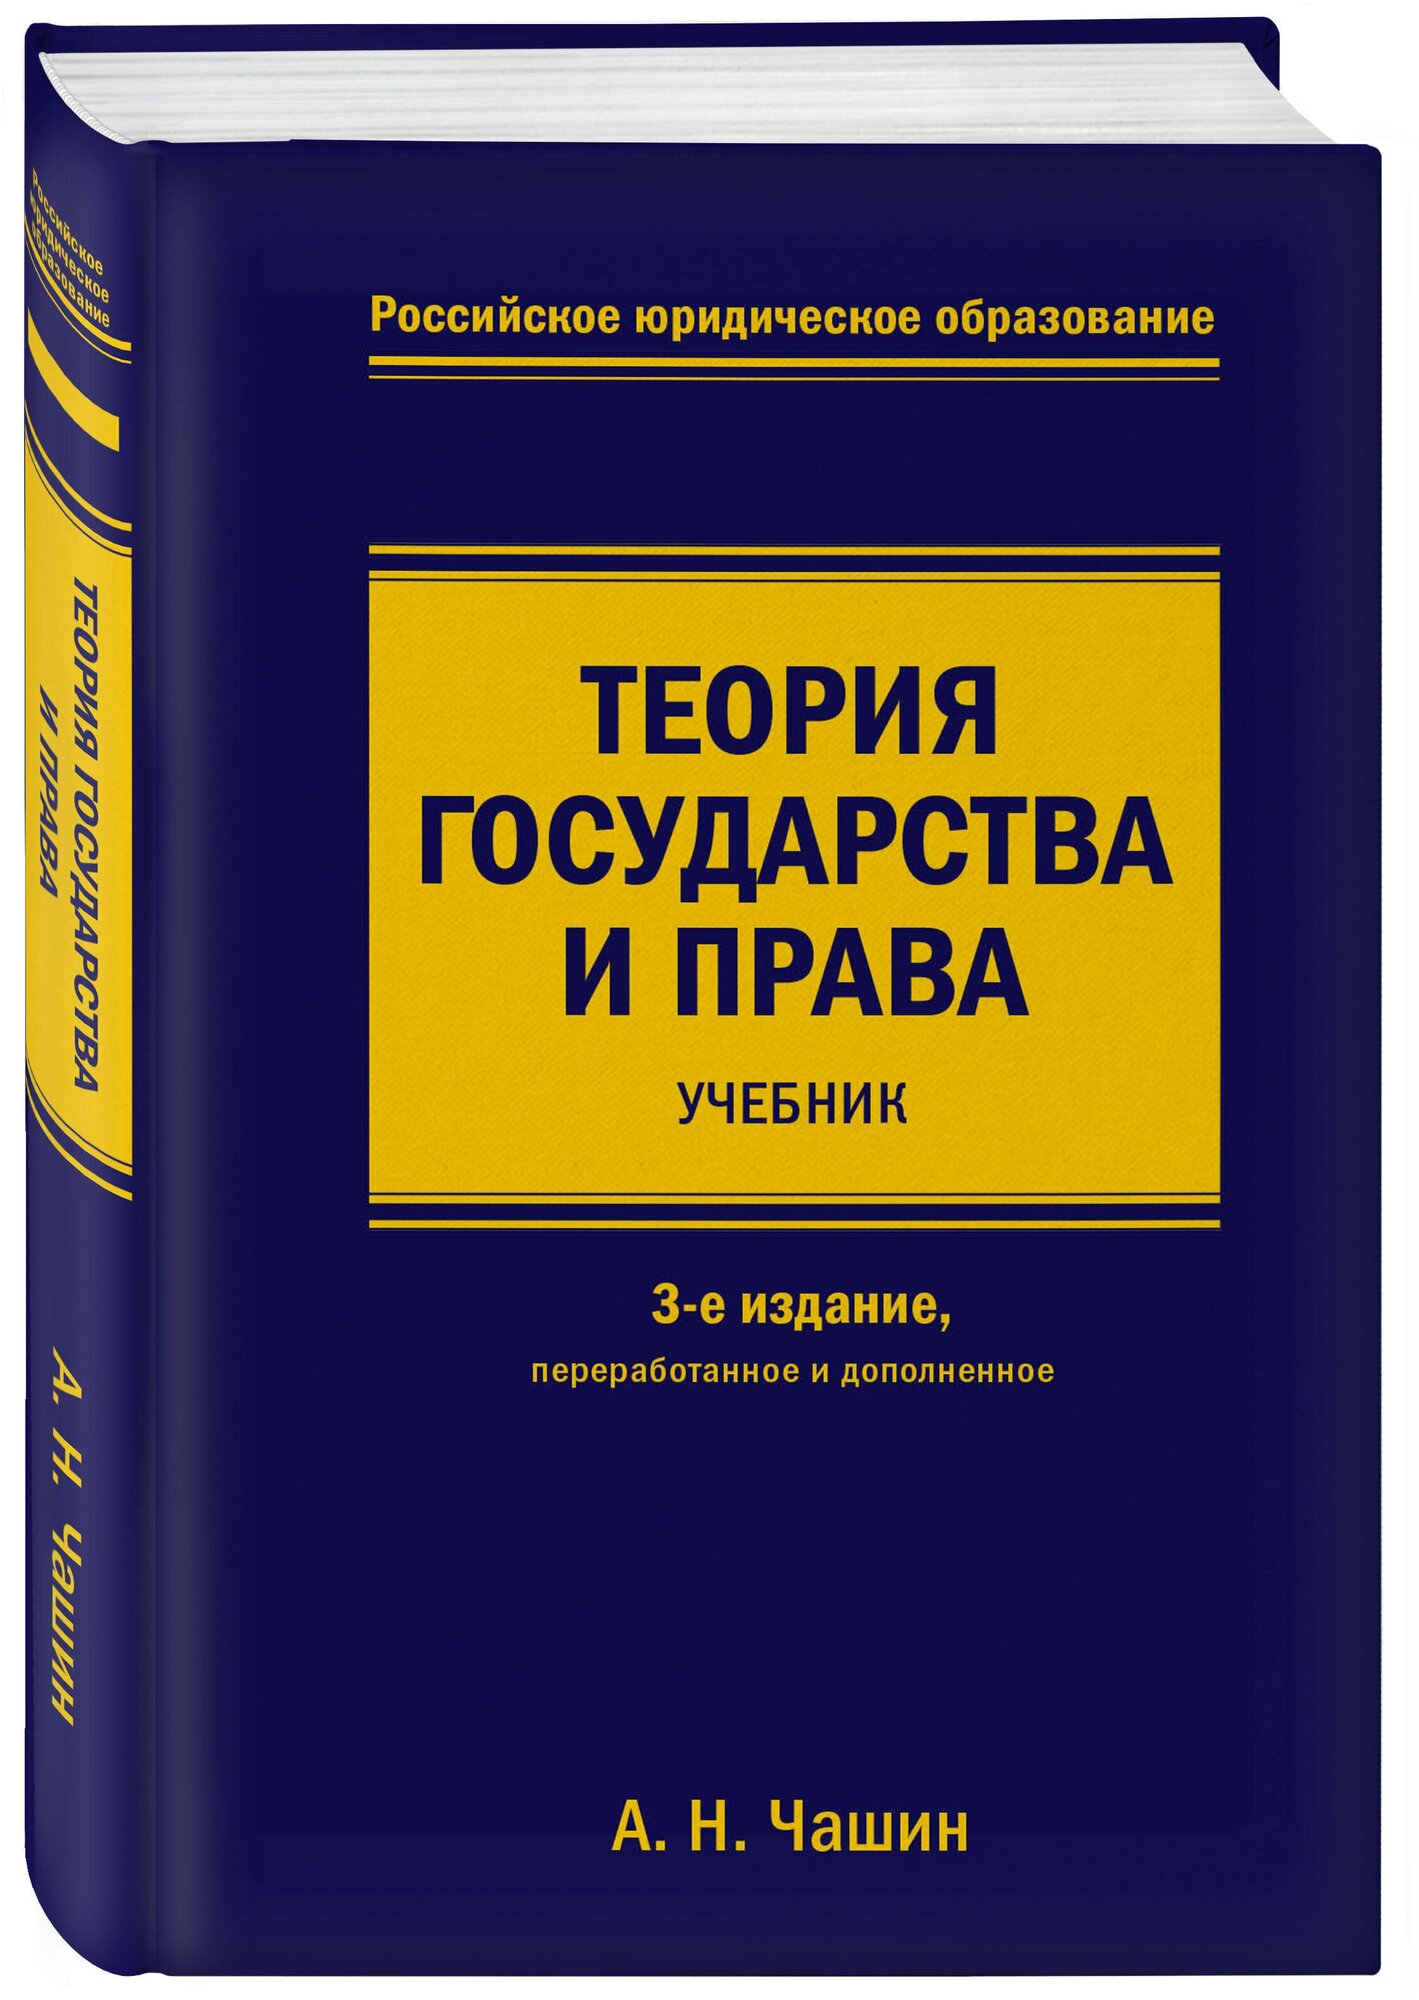 Чашин А. Н. Теория государства и права. Учебник. 3-е издание, переработанное и дополненное